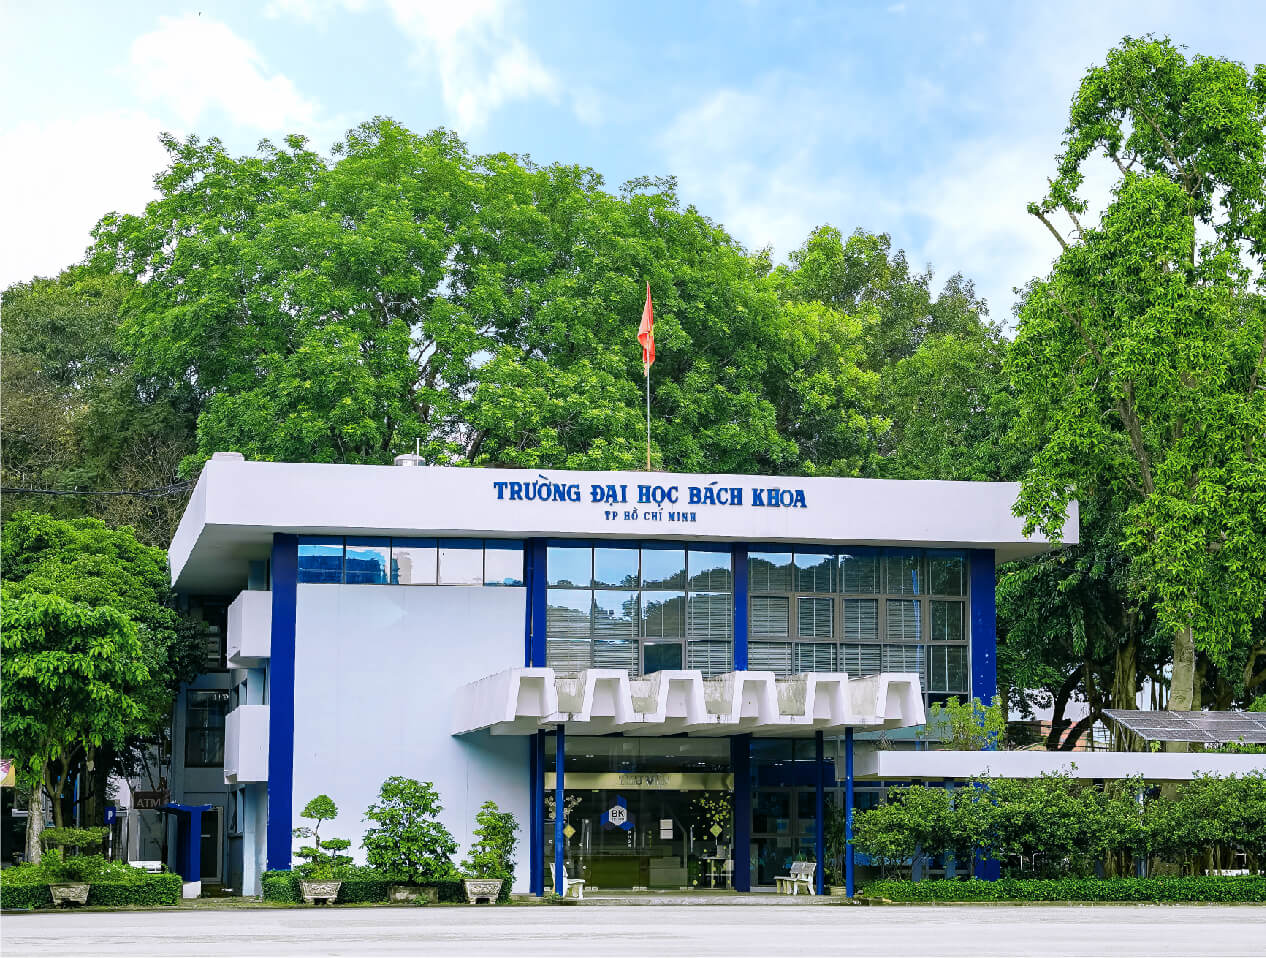  Đại học Bách khoa Tp. Hồ Chí Minh